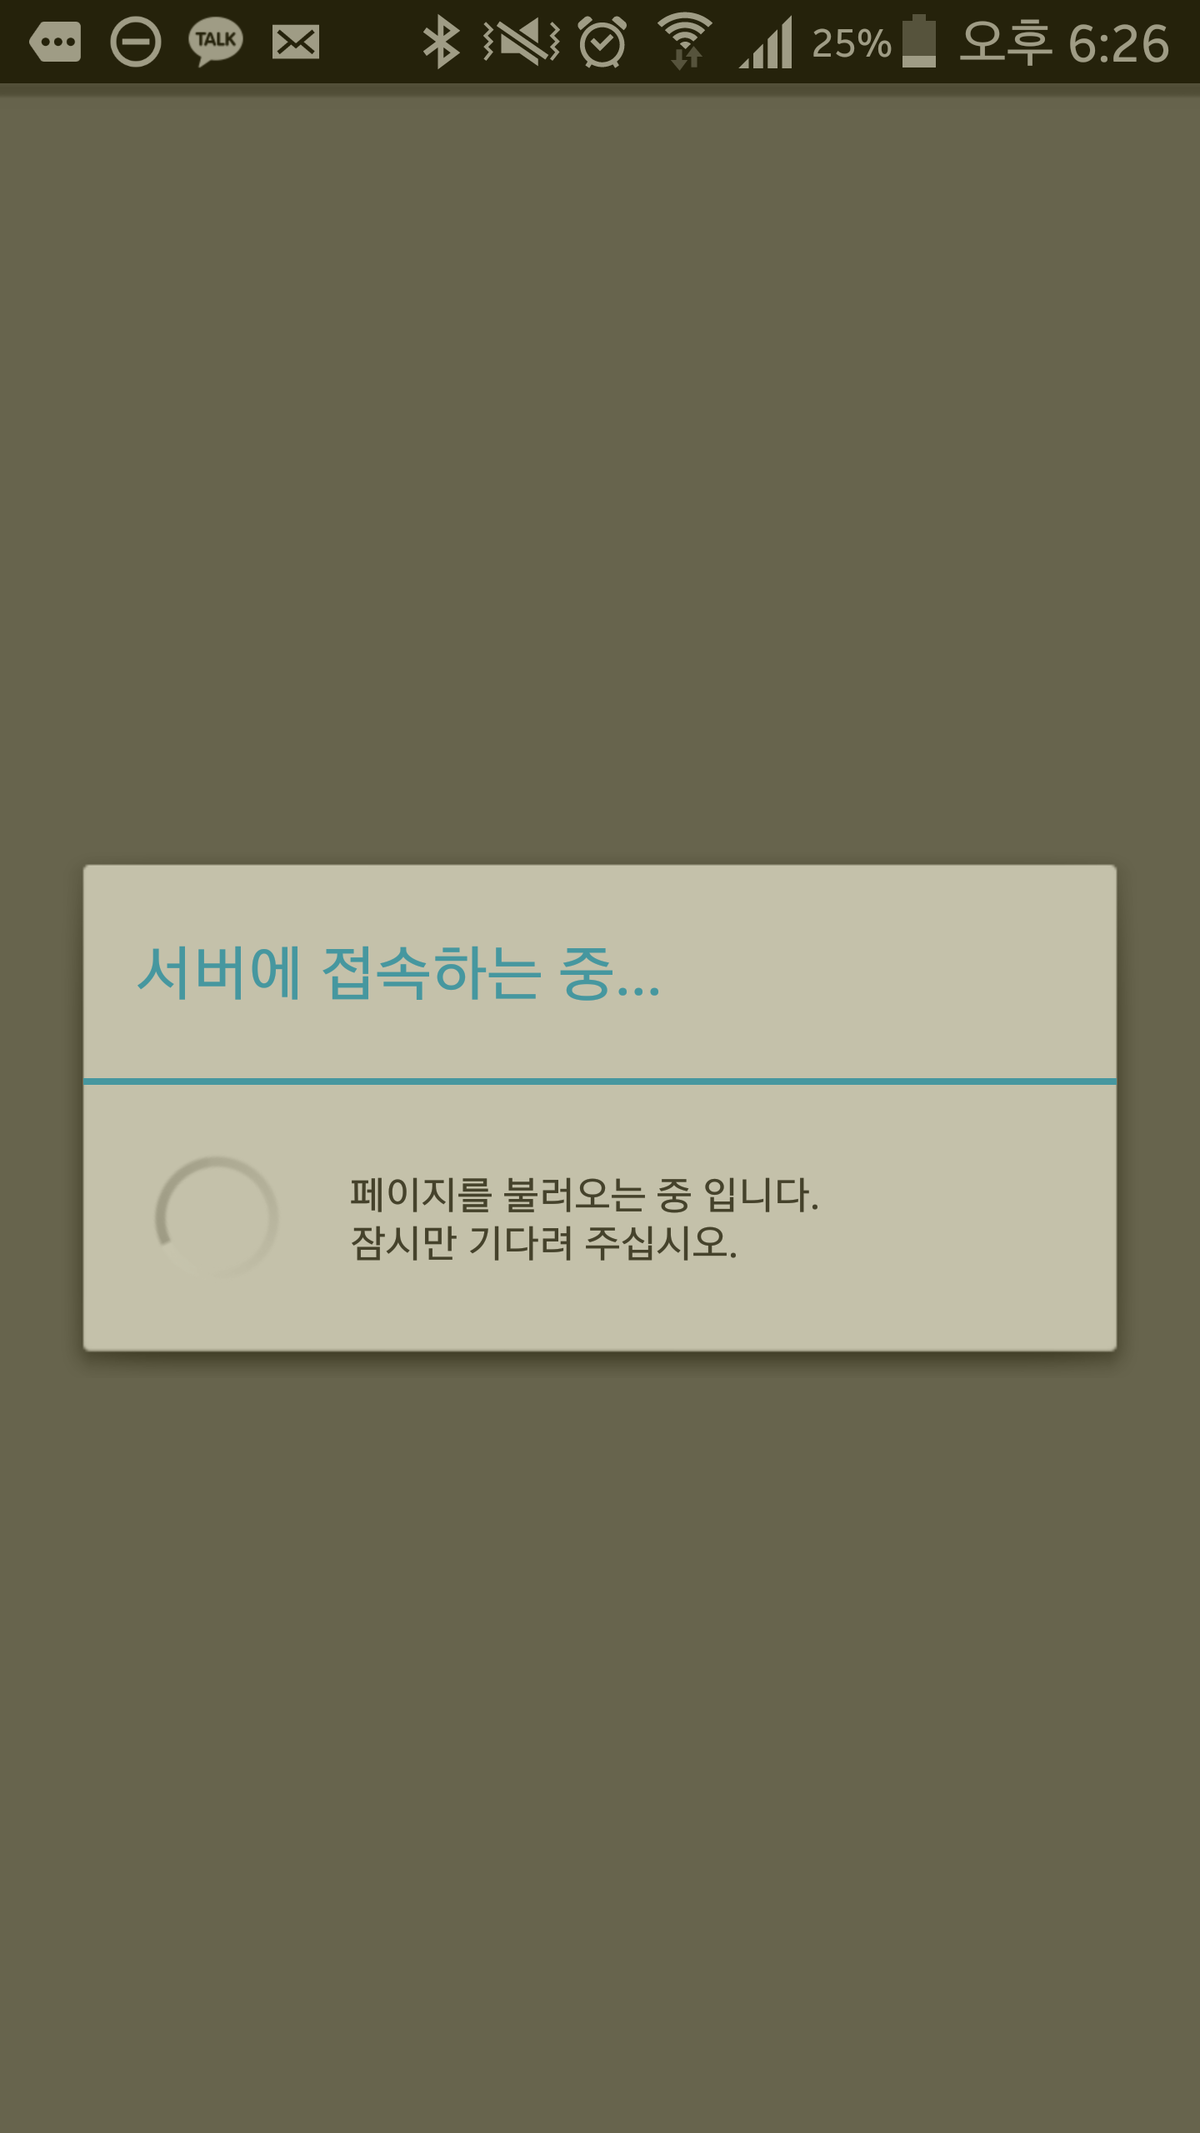 Screenshot_2015-11-13-18-26-55.png : 마이피누 어플 오류 도와주세요!!